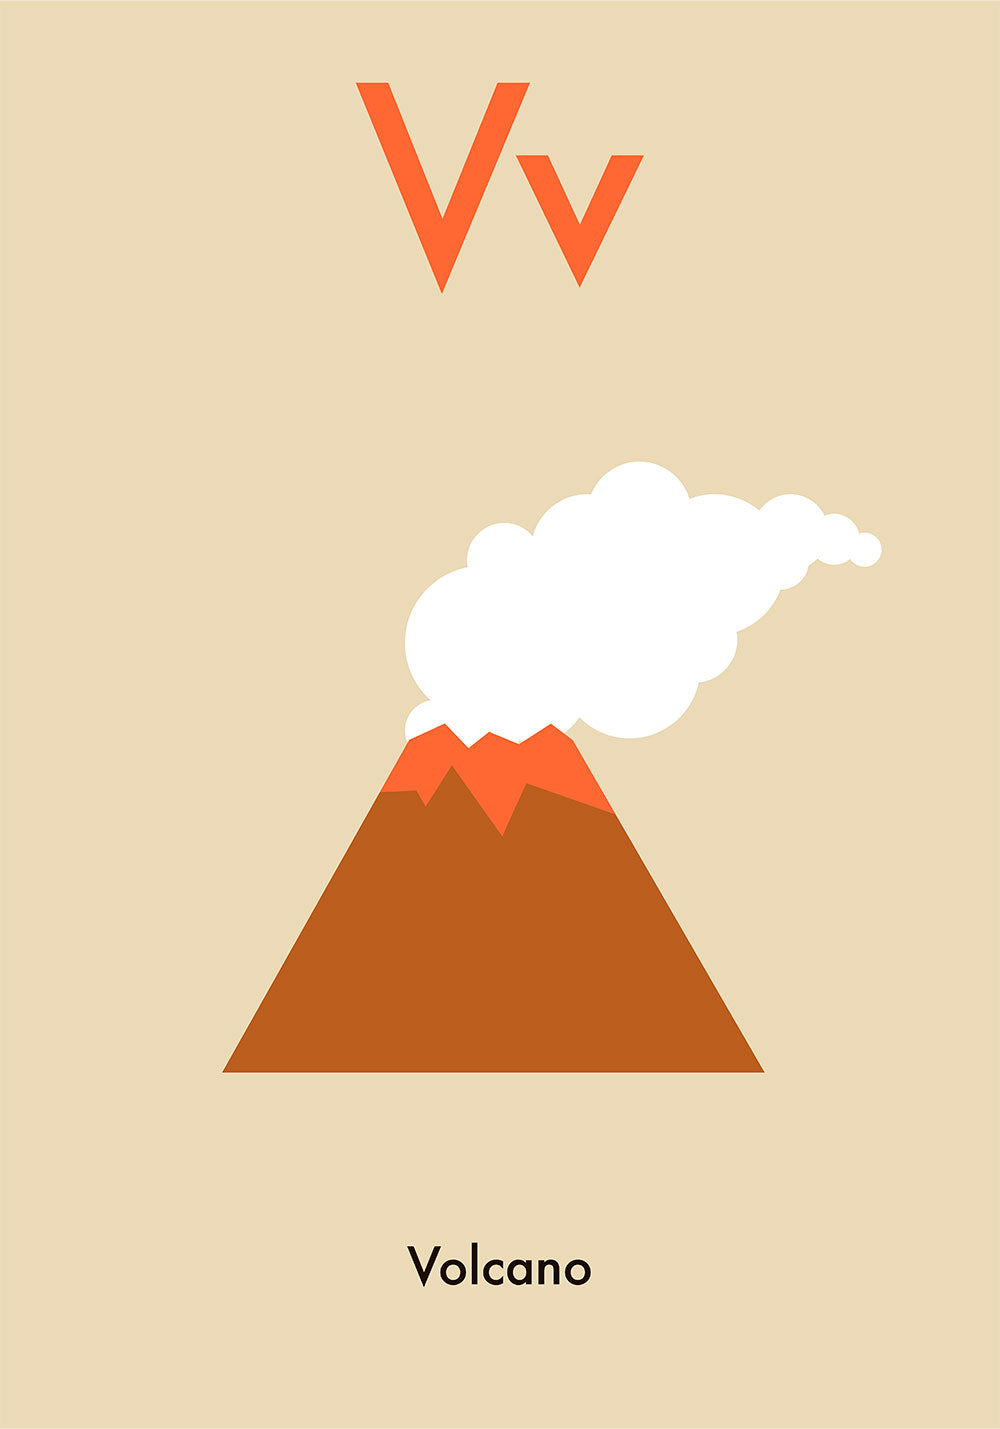 V for Volcano - Children's Alphabet Poster in English